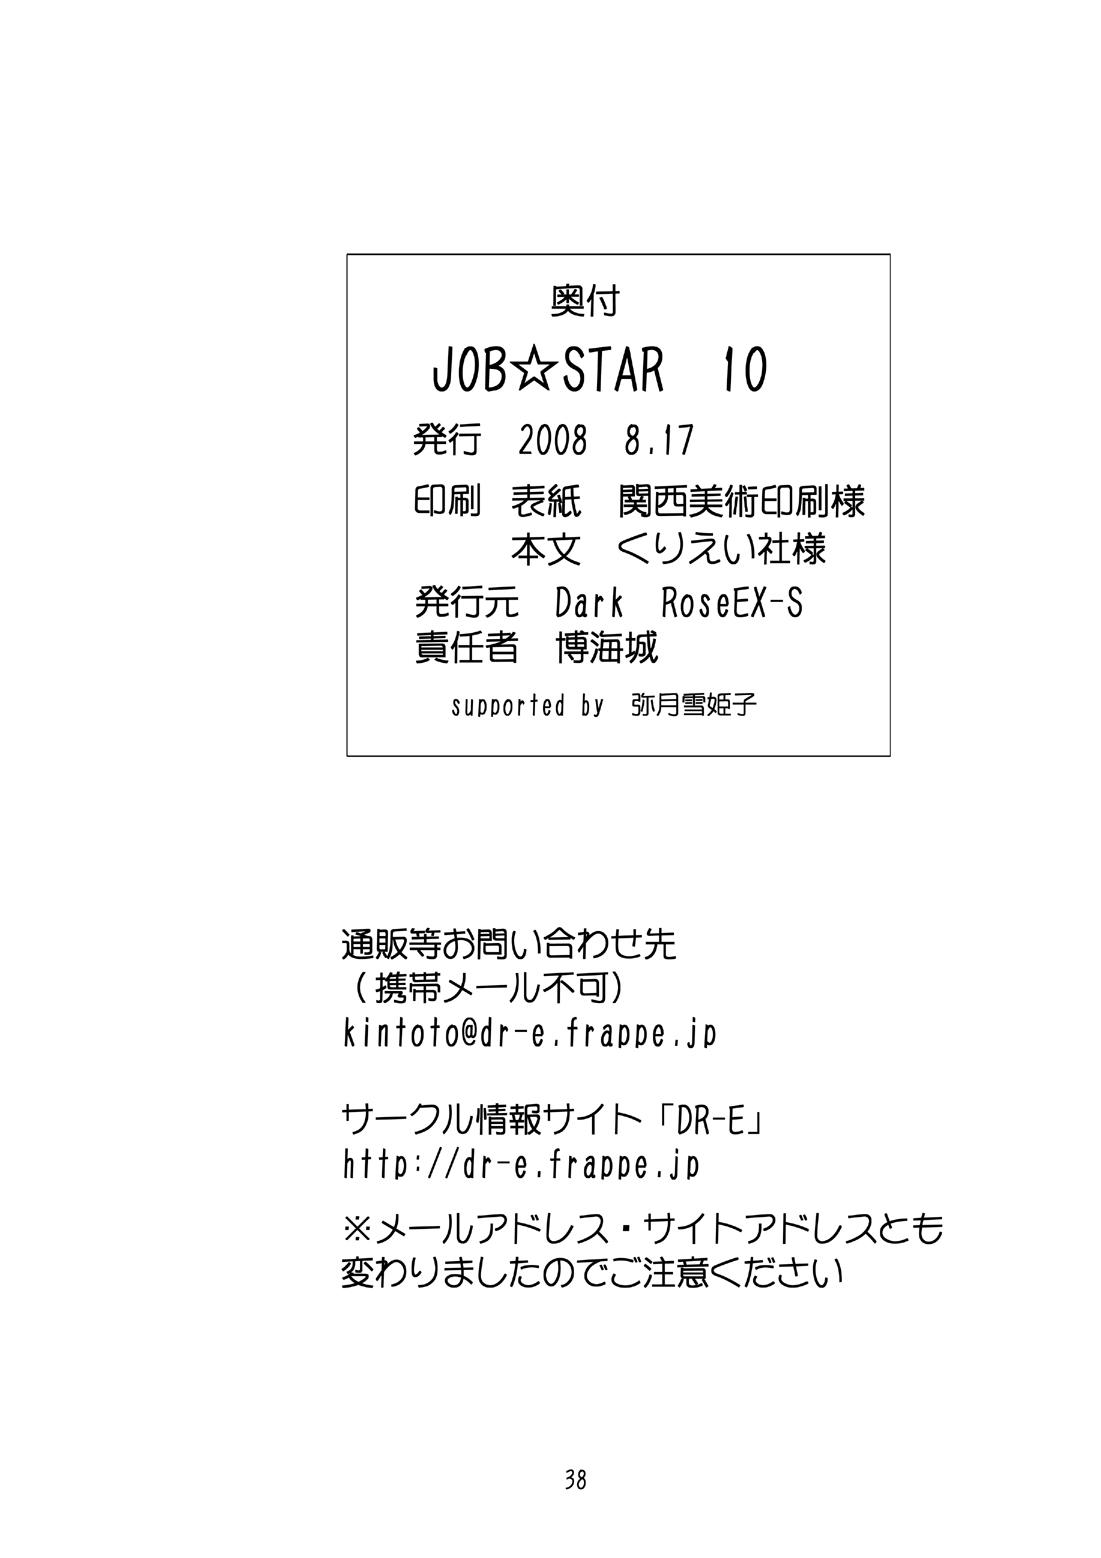 JOB STAR 10 37